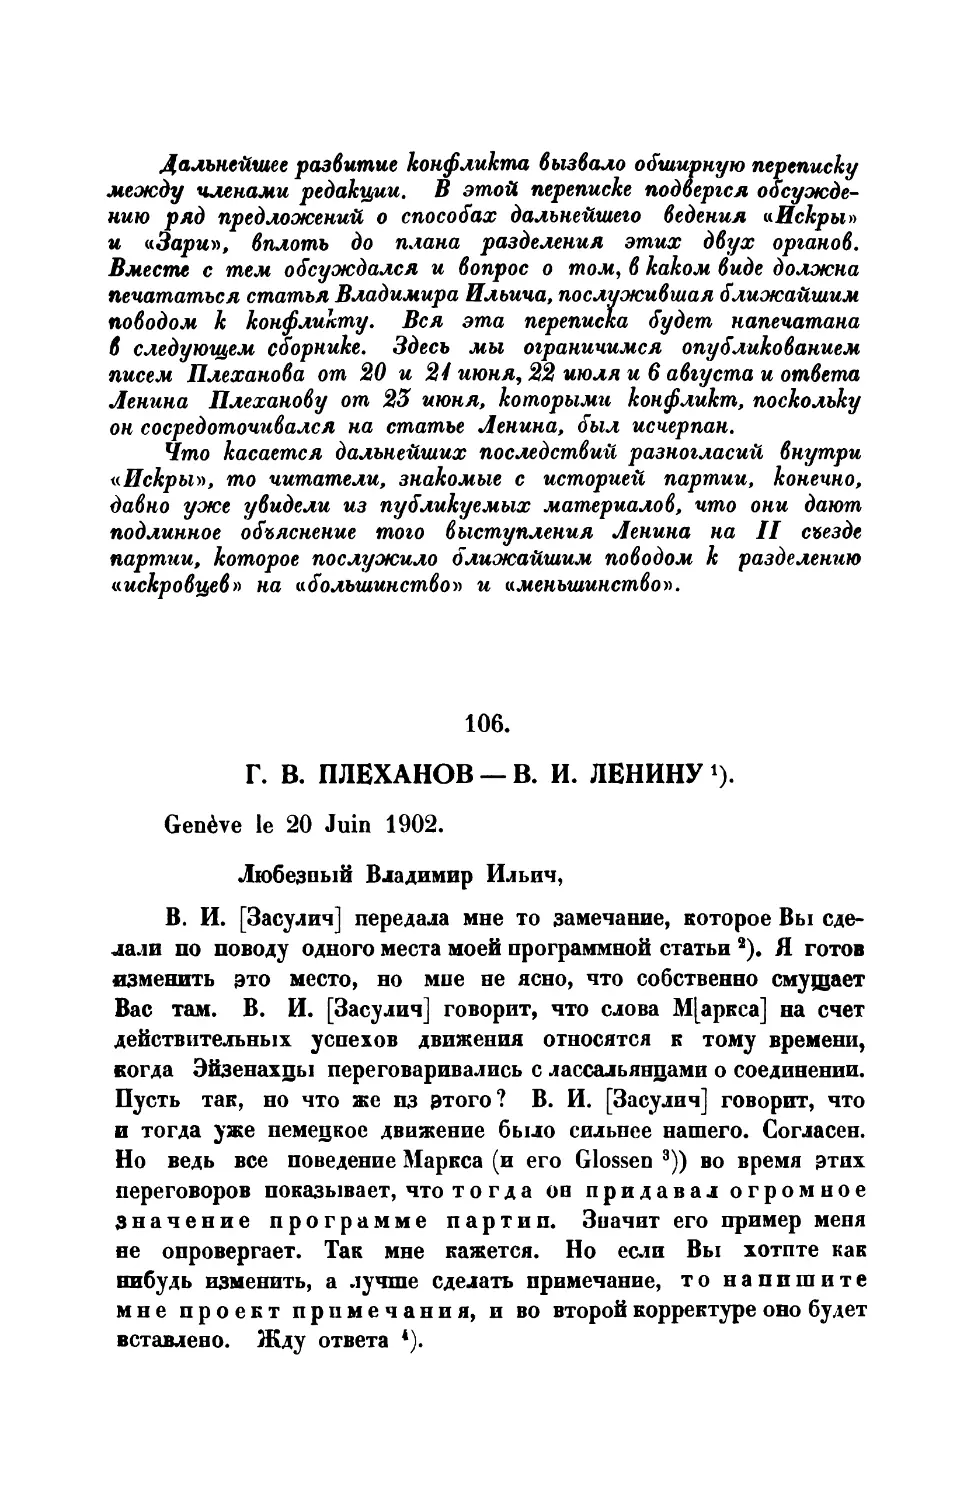 106. Г. В. Плеханов. — Письмо В. И. Ленину от 20 VI 1902г.